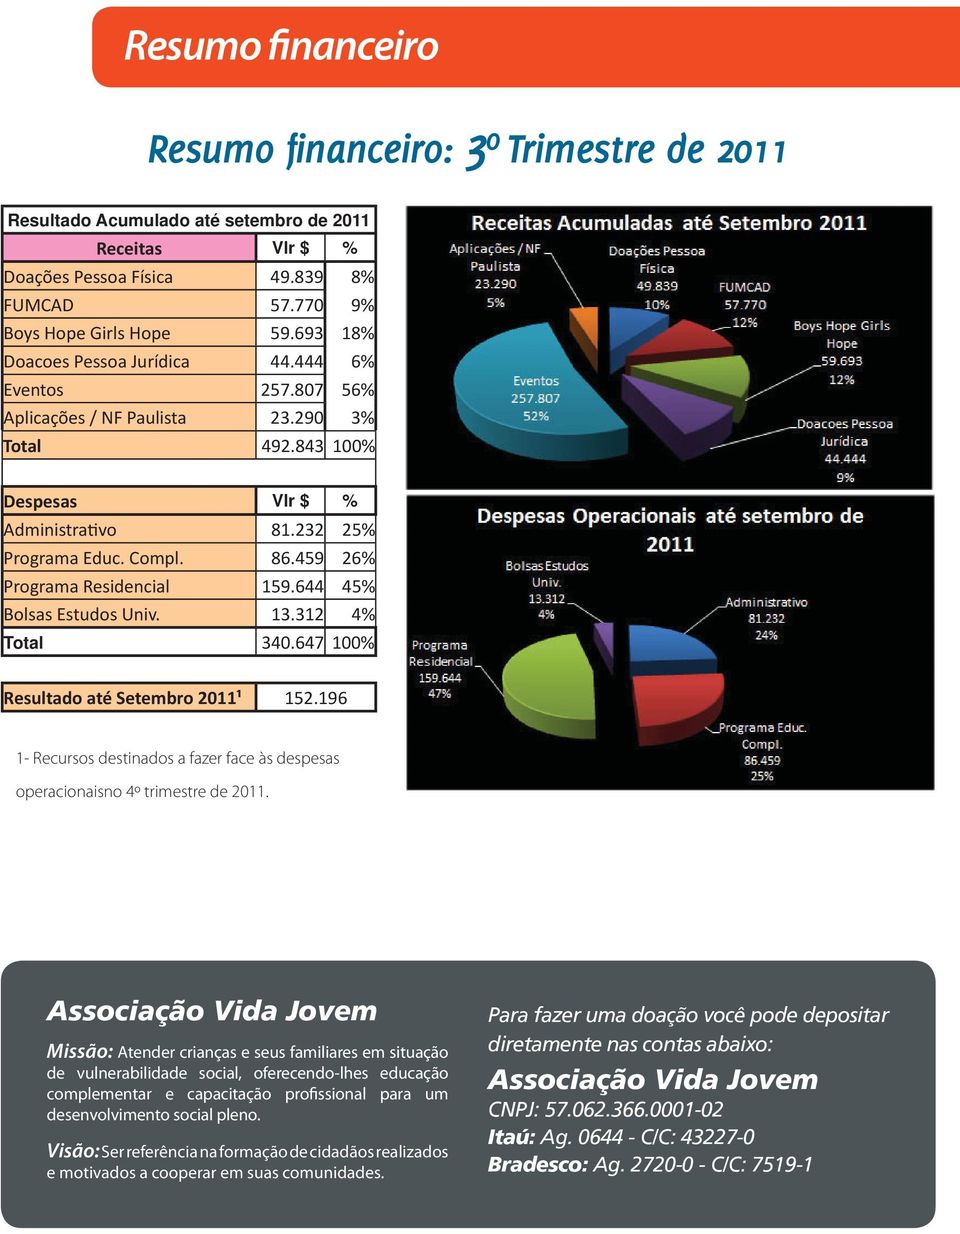 459 26% Programa Residencial 159.644 45% Bolsas Estudos Univ. 13.312 4% Total 340.647 100% Resultado até Setembro 2011¹ 152.